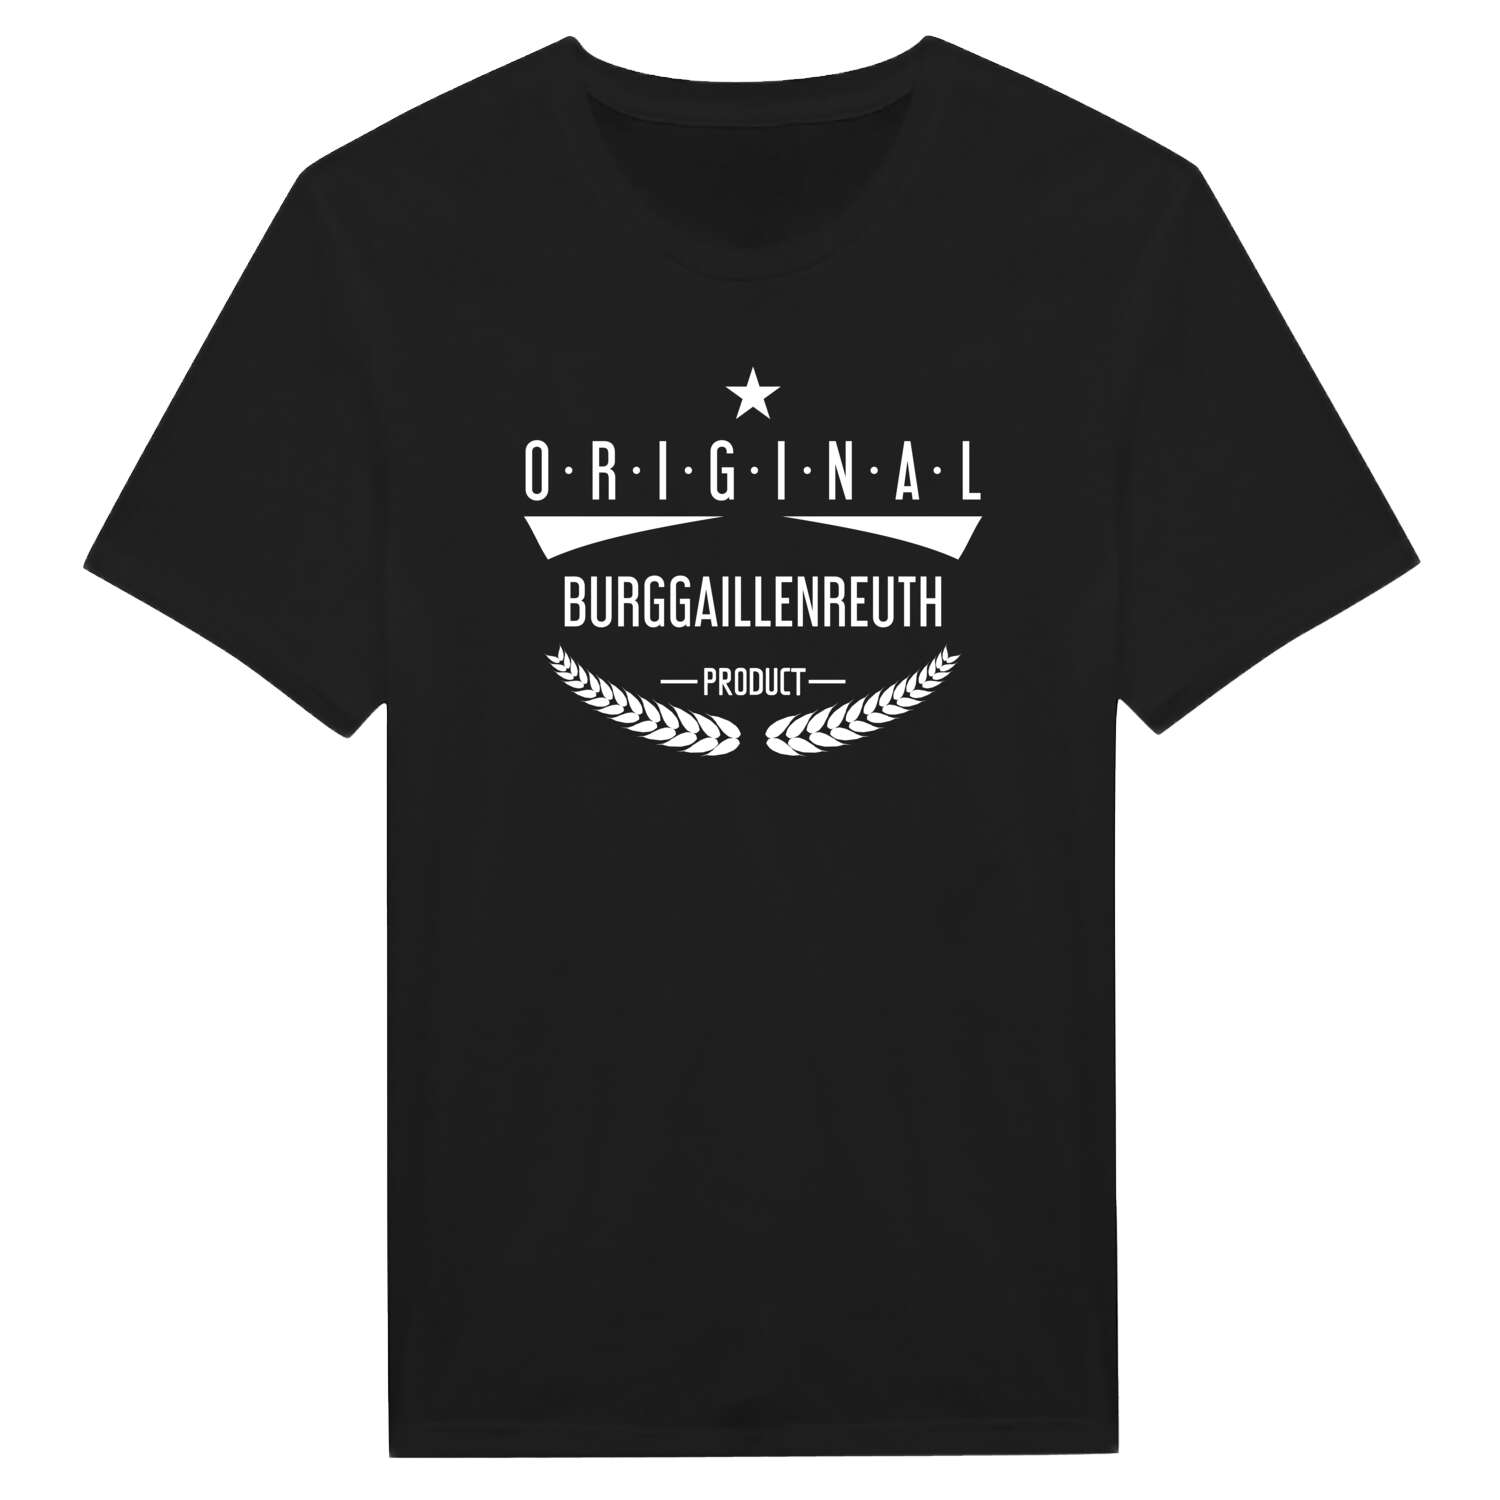 Burggaillenreuth T-Shirt »Original Product«